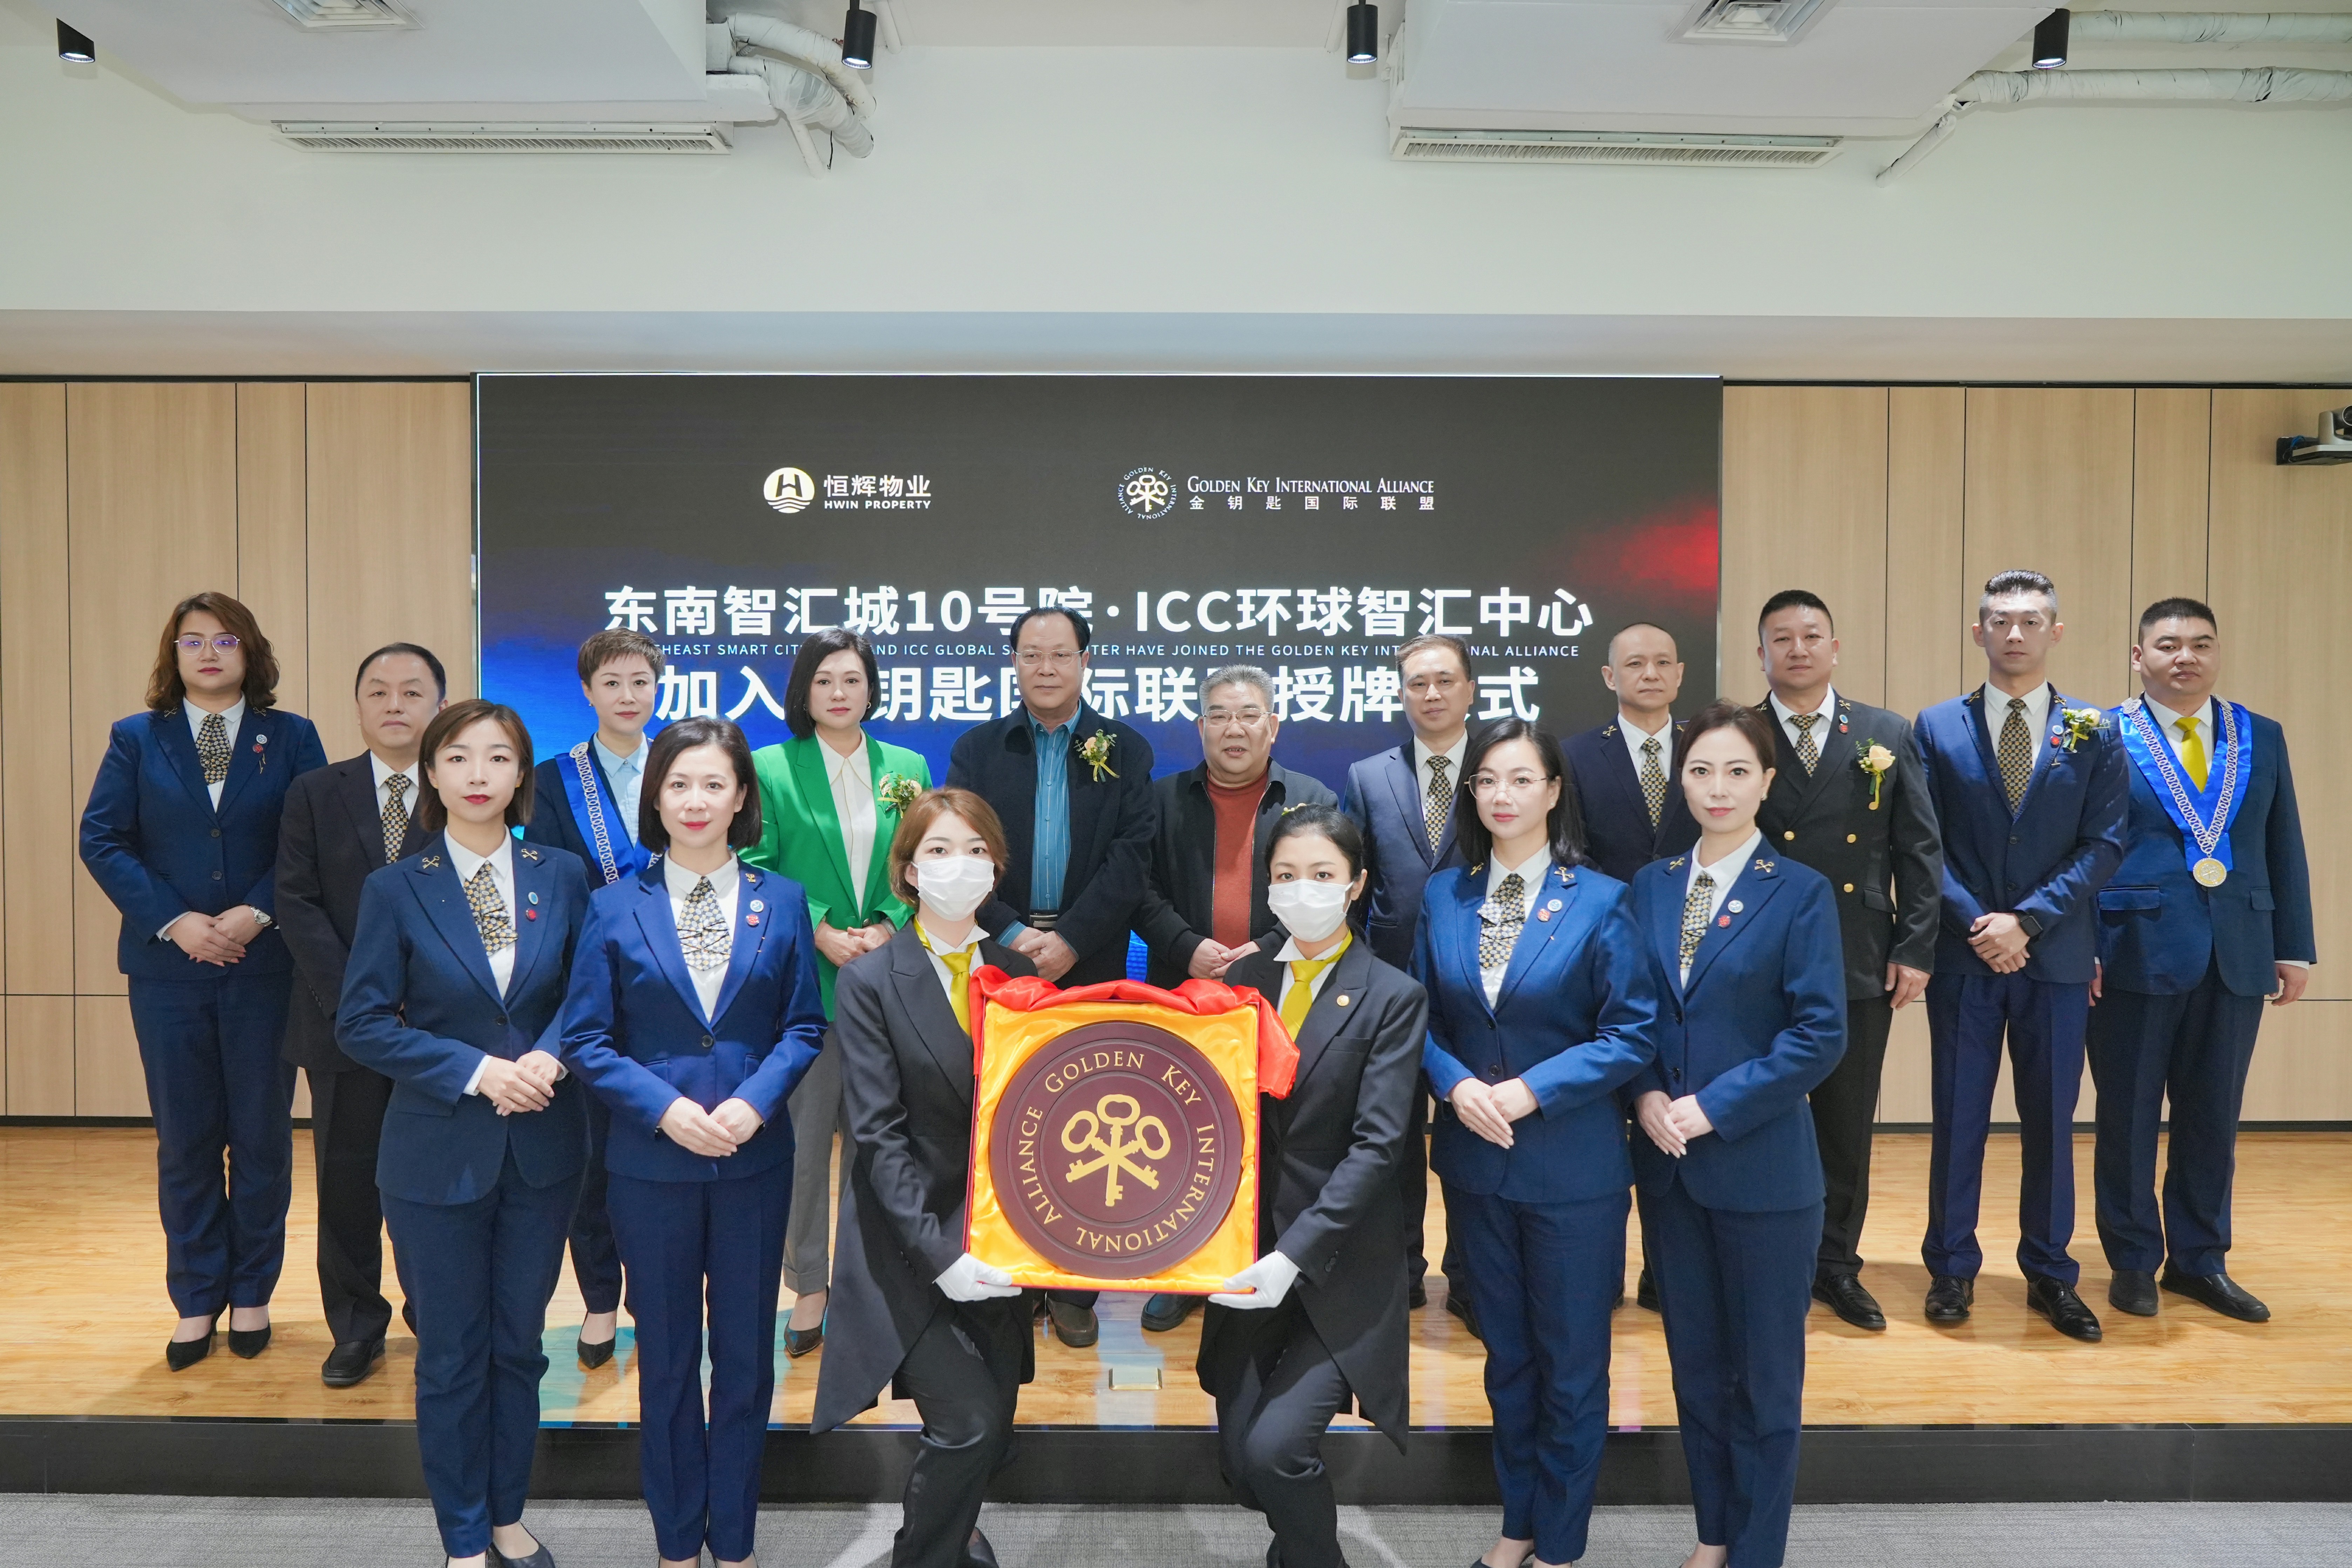 东南智汇城10号院和ICC环球智汇中心加入金钥匙国际联